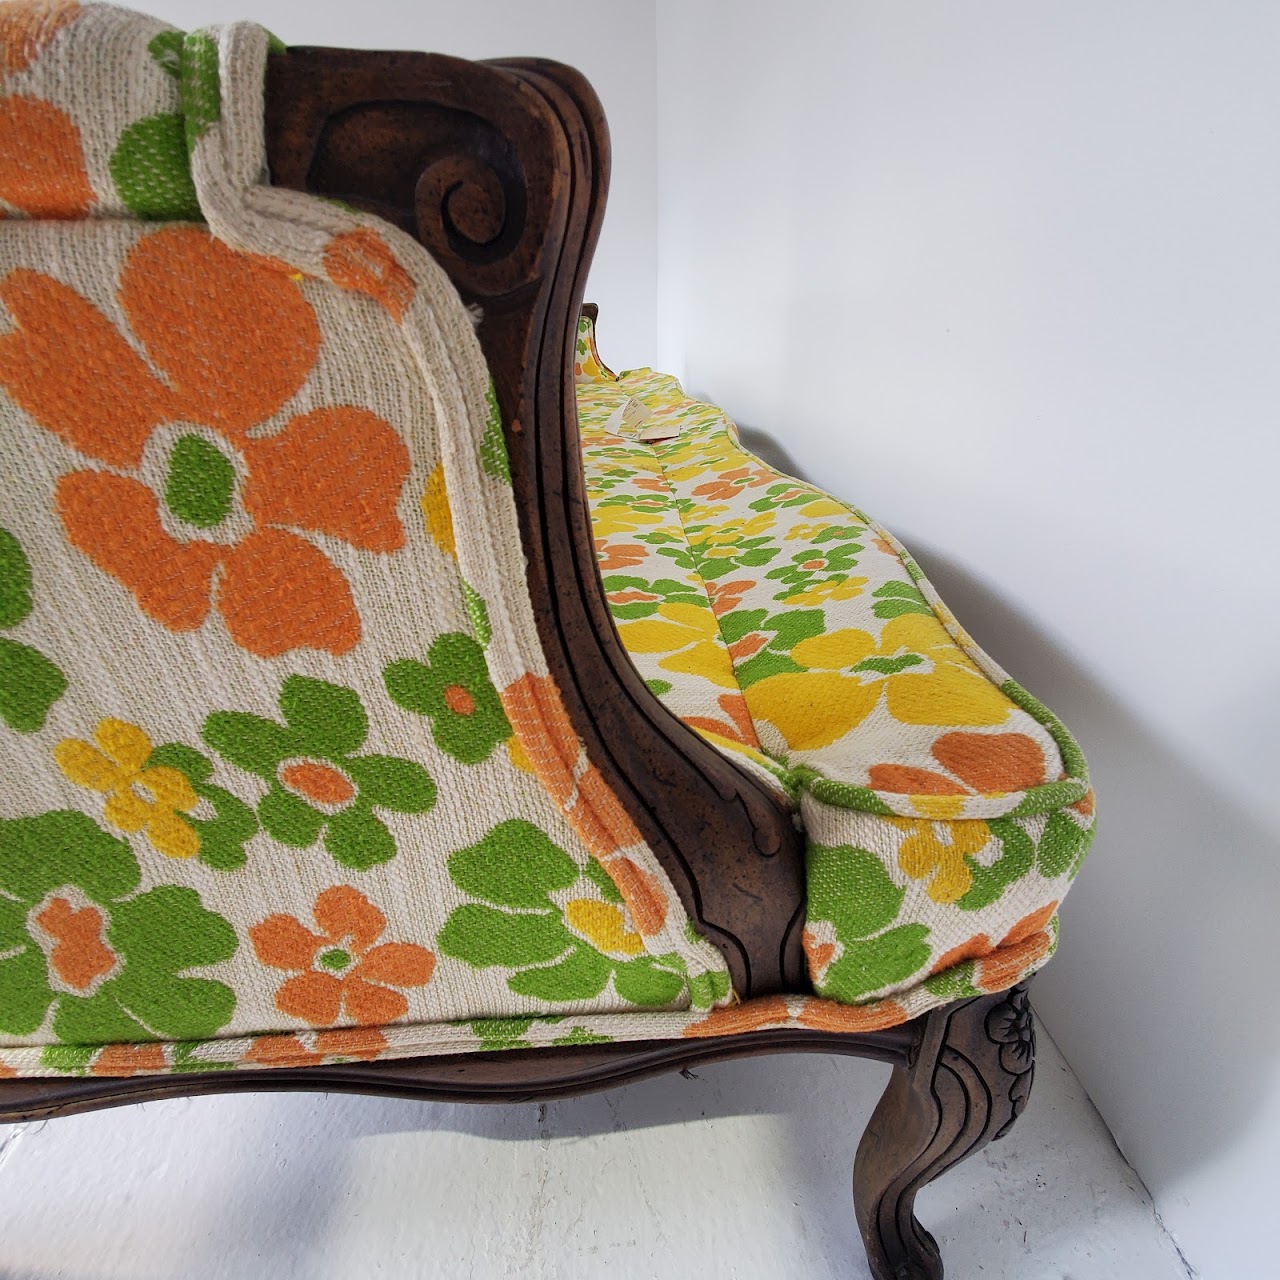 Vintage Mod Floral Sofa